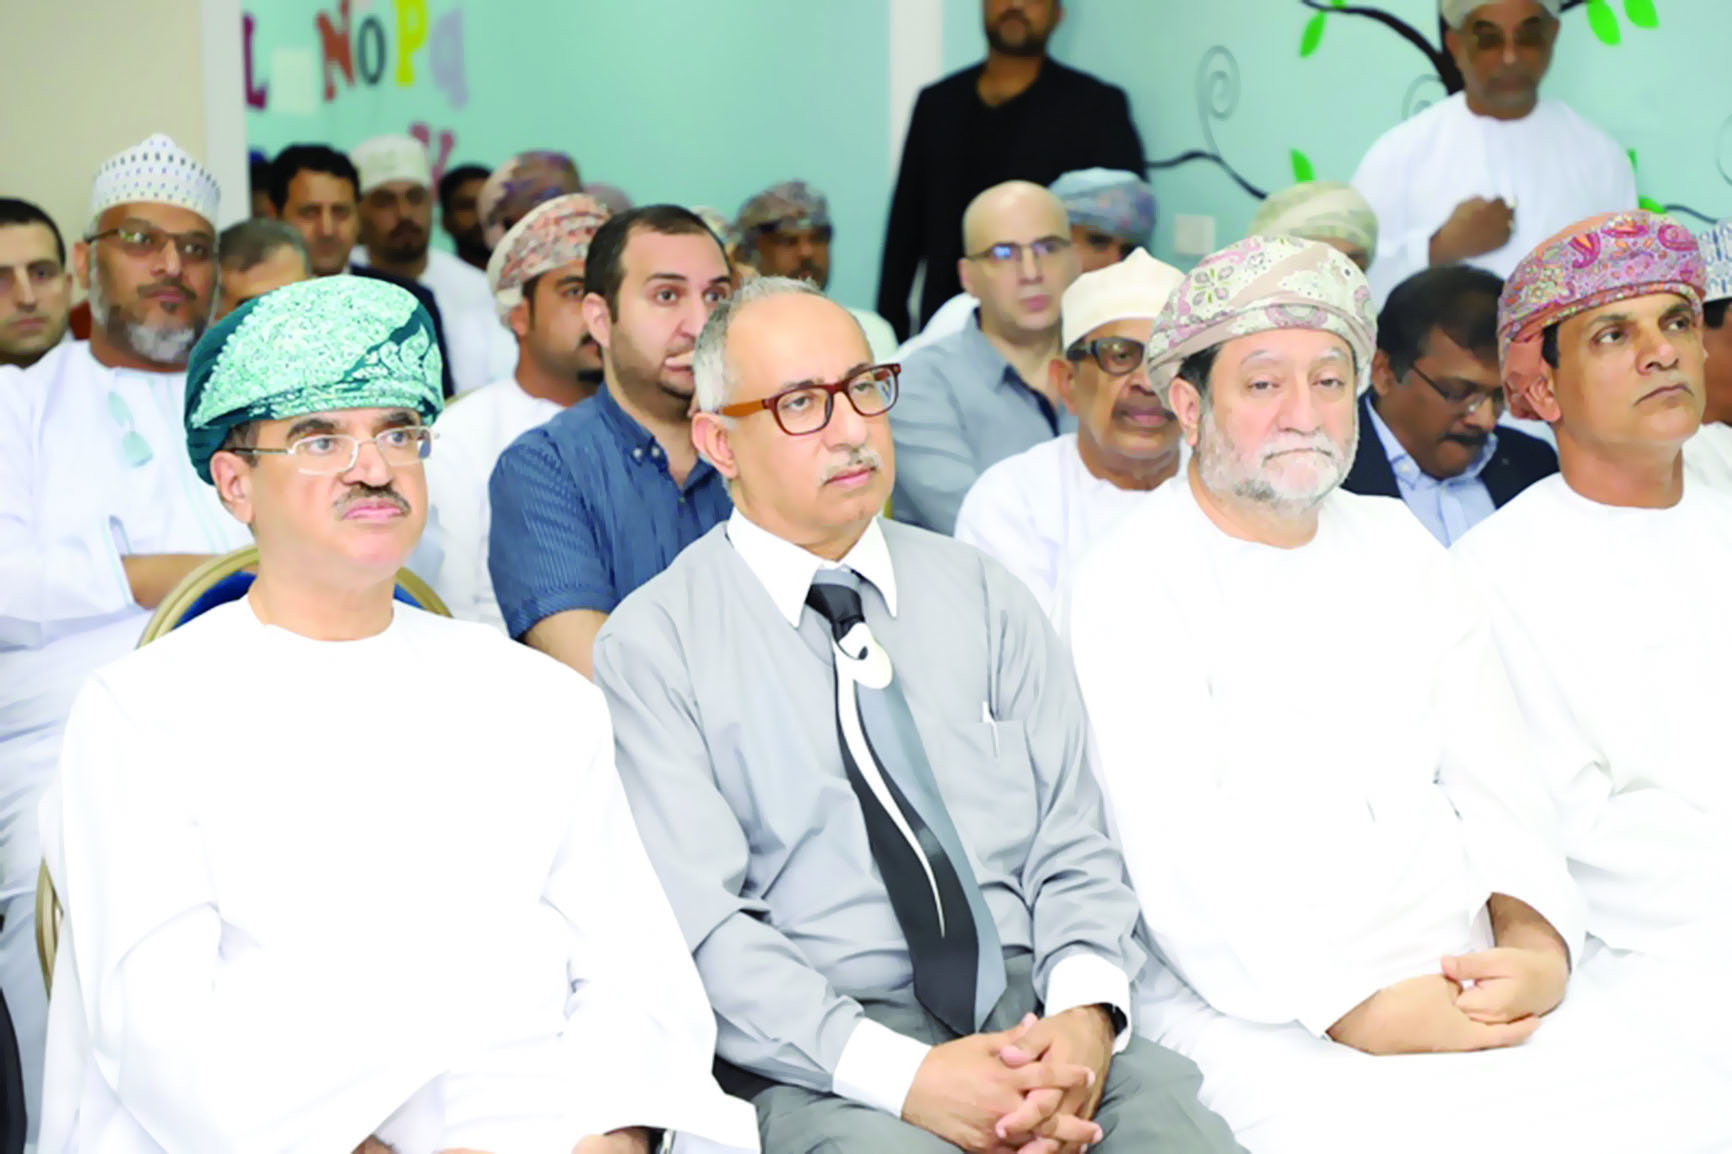 مستشفى الخليج التخصصي يفتتح أول مركز علاج بـ"الأوكسجين المضغوط"